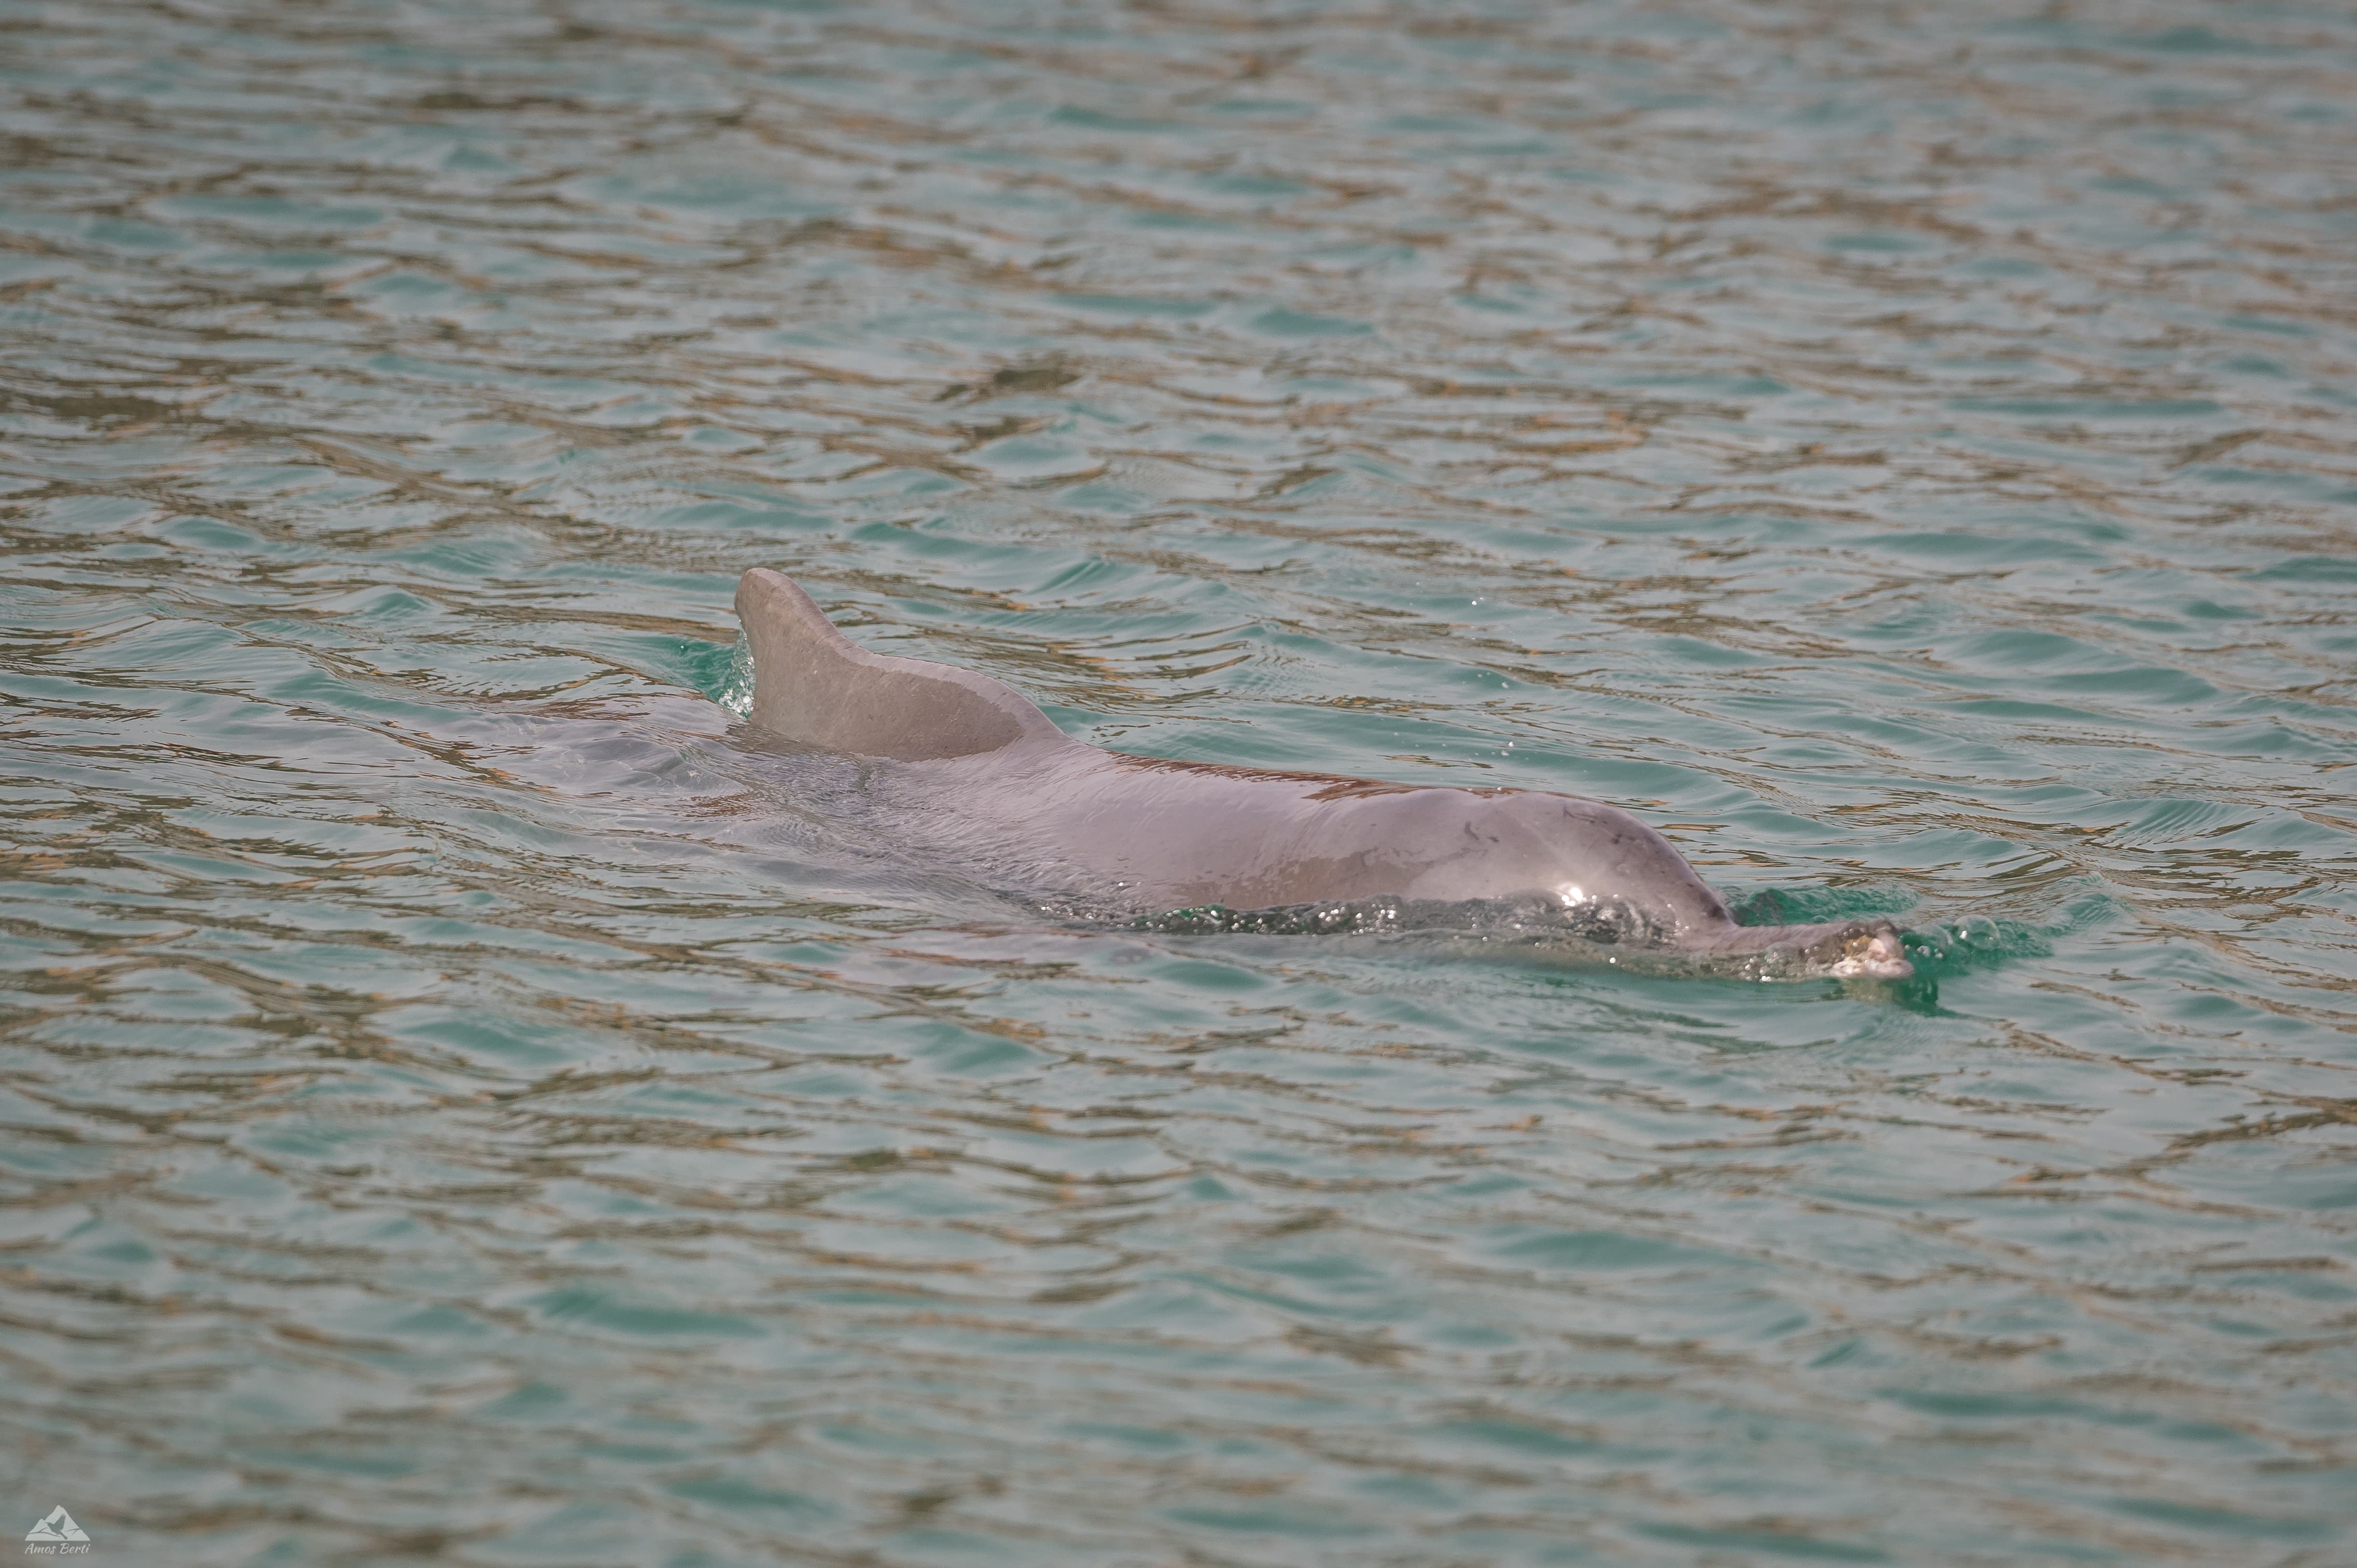 תצפית מרגשת: דולפינה ממין דולפין מגובנן נראתה בחוף הצפוני באילת